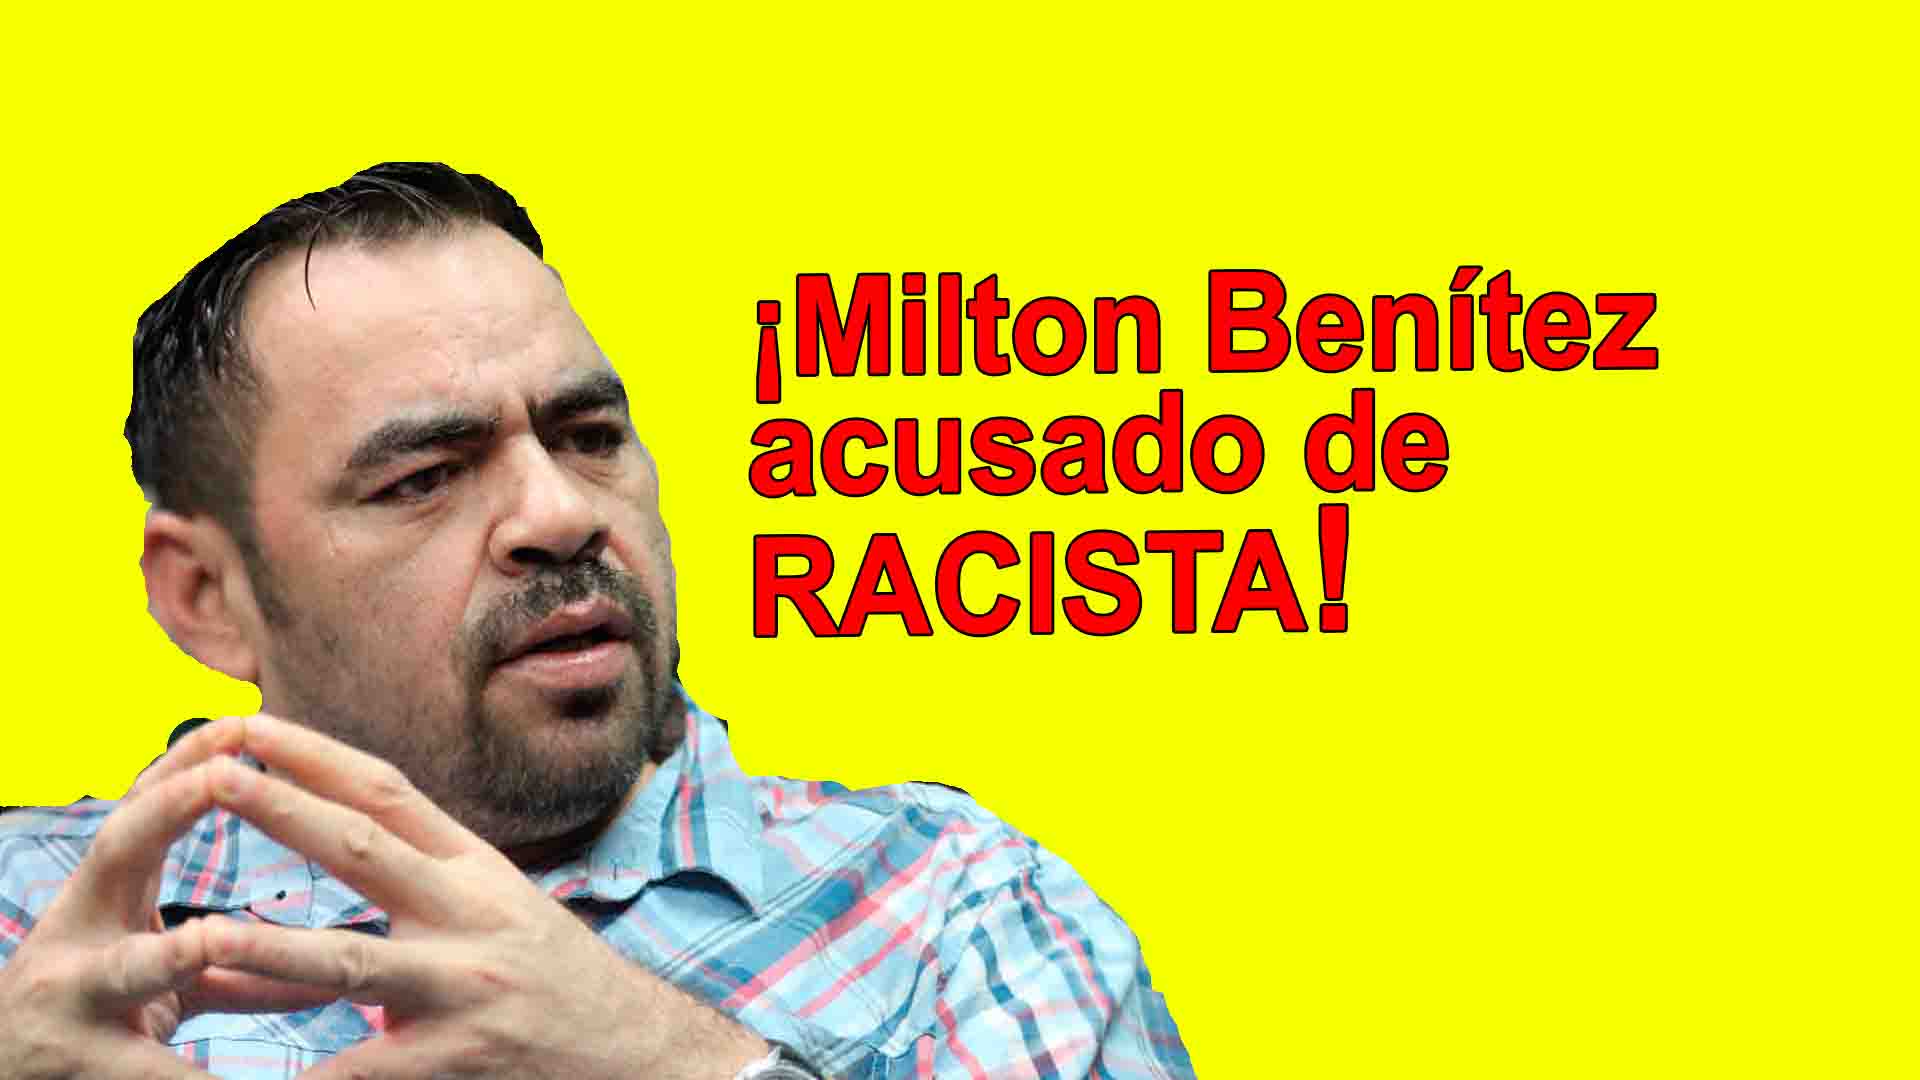 Perro Amarillo, Milton Benítez, es denunciado por racista